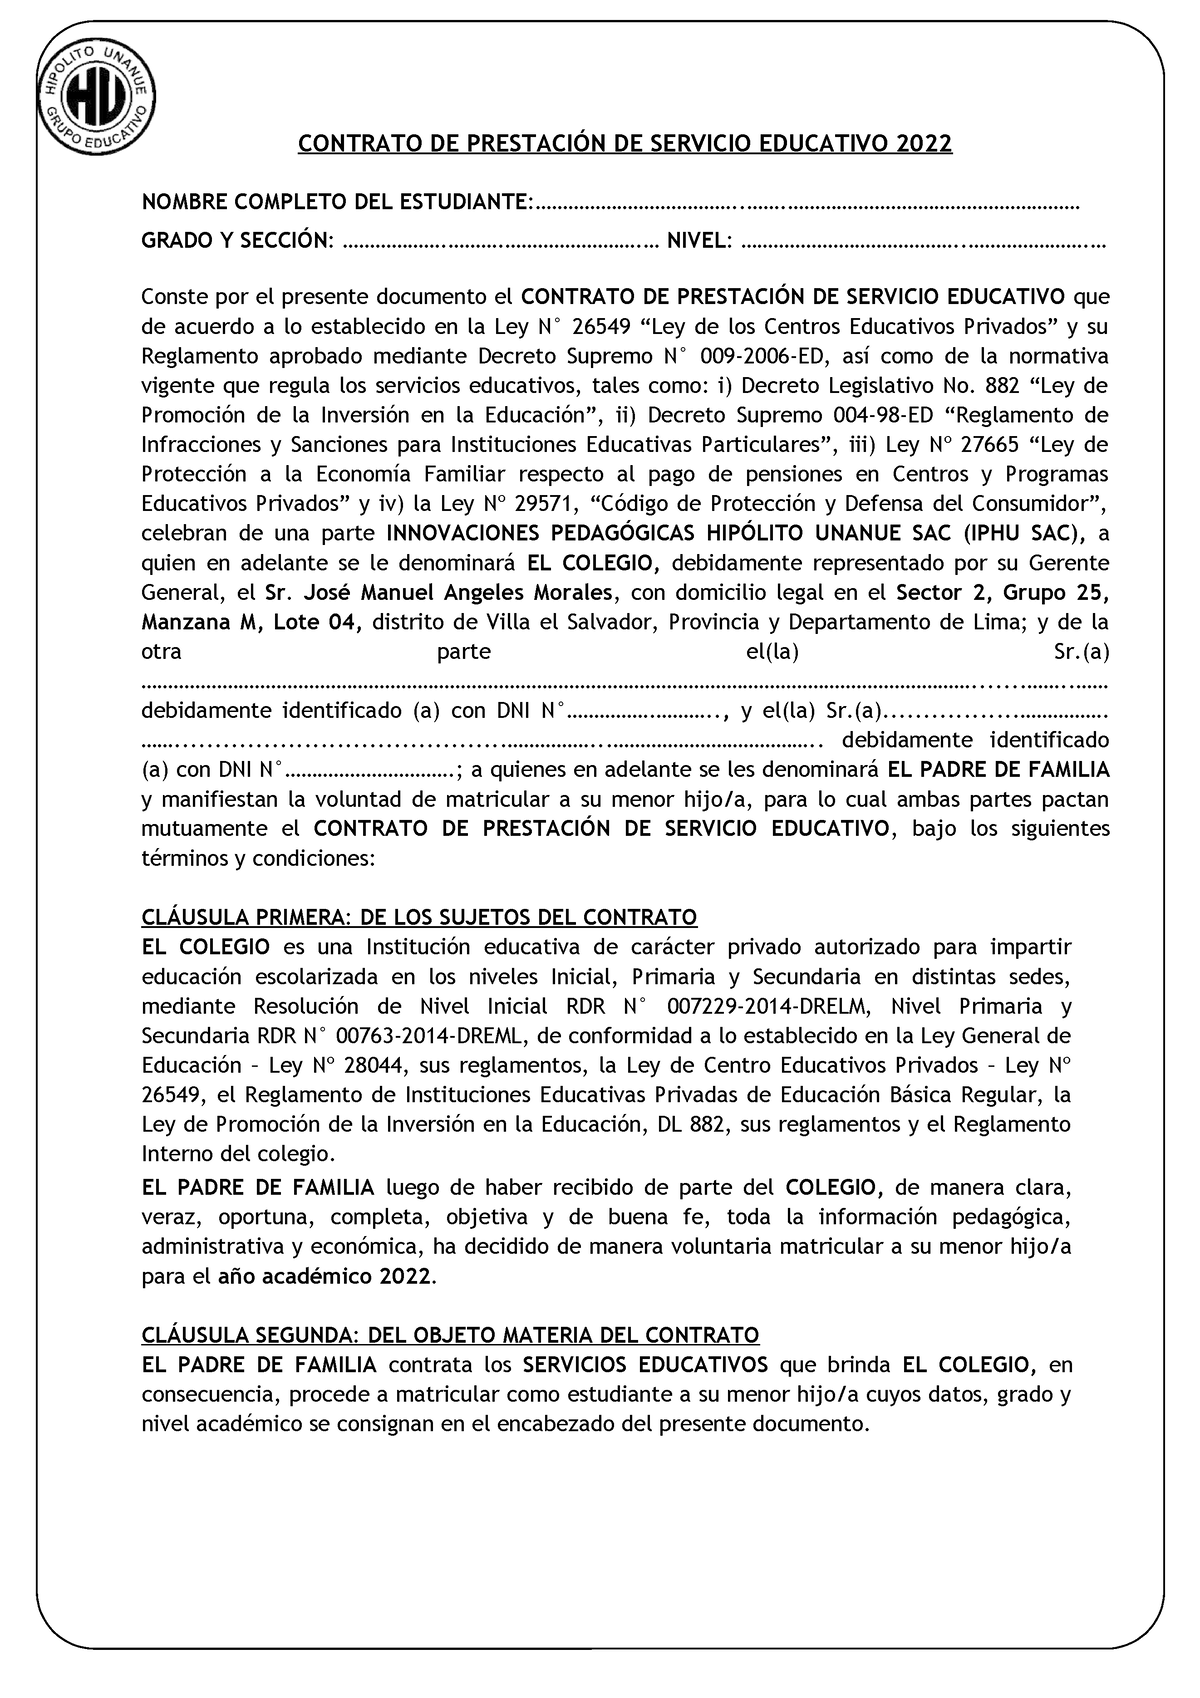 Contrato DE Prestación DE Servicio Educativo 2022 - SUR - CONTRATO DE  PRESTACIÓN DE SERVICIO - Studocu